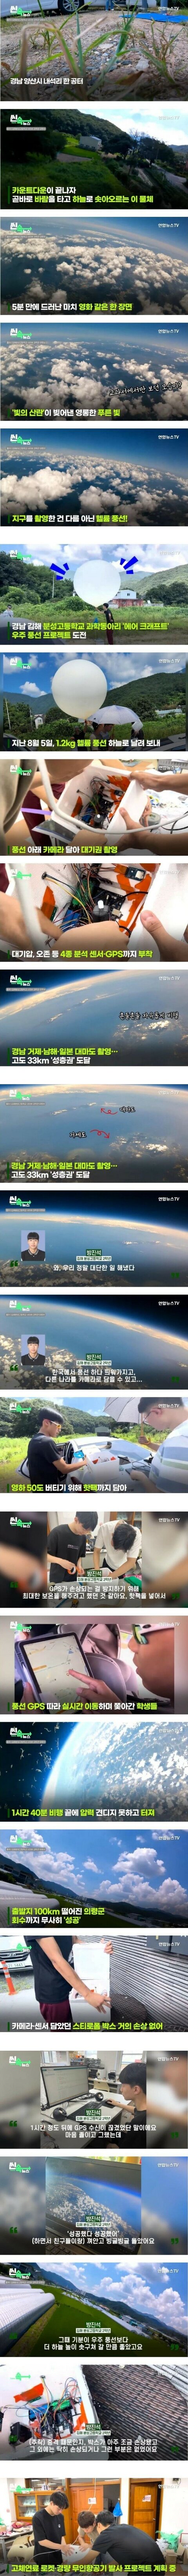 김해분성고등학생들 헬륨 풍선 띄워서 지구 촬영 크게 성공 회수까지 완벽